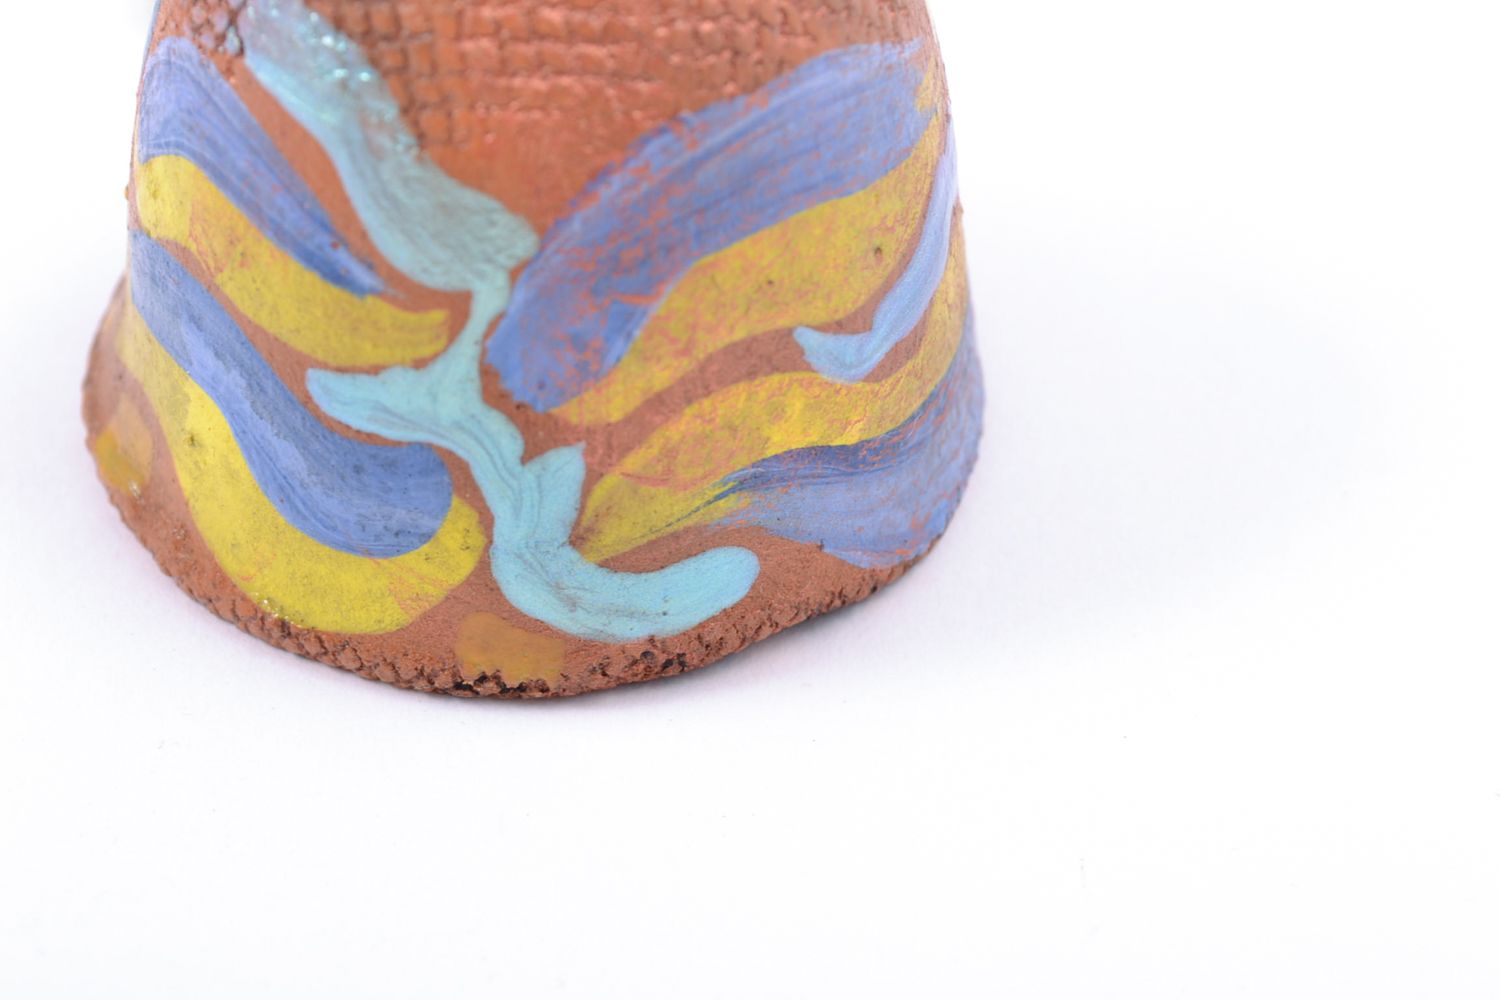 Petite cloche terre cuite à motif peinte de colorants acryliques faite main photo 3